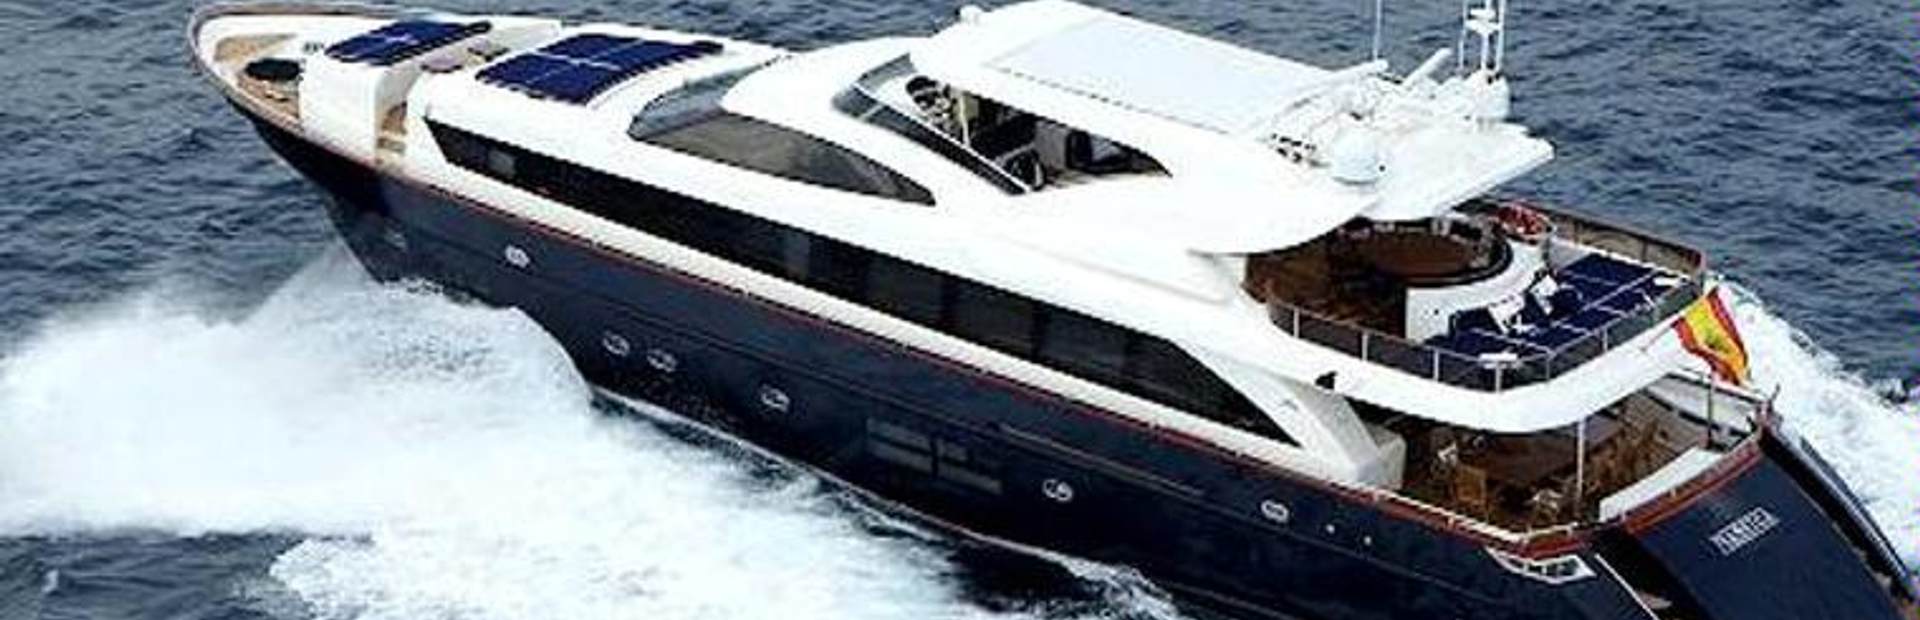 Astondoa 106 GLX Yacht